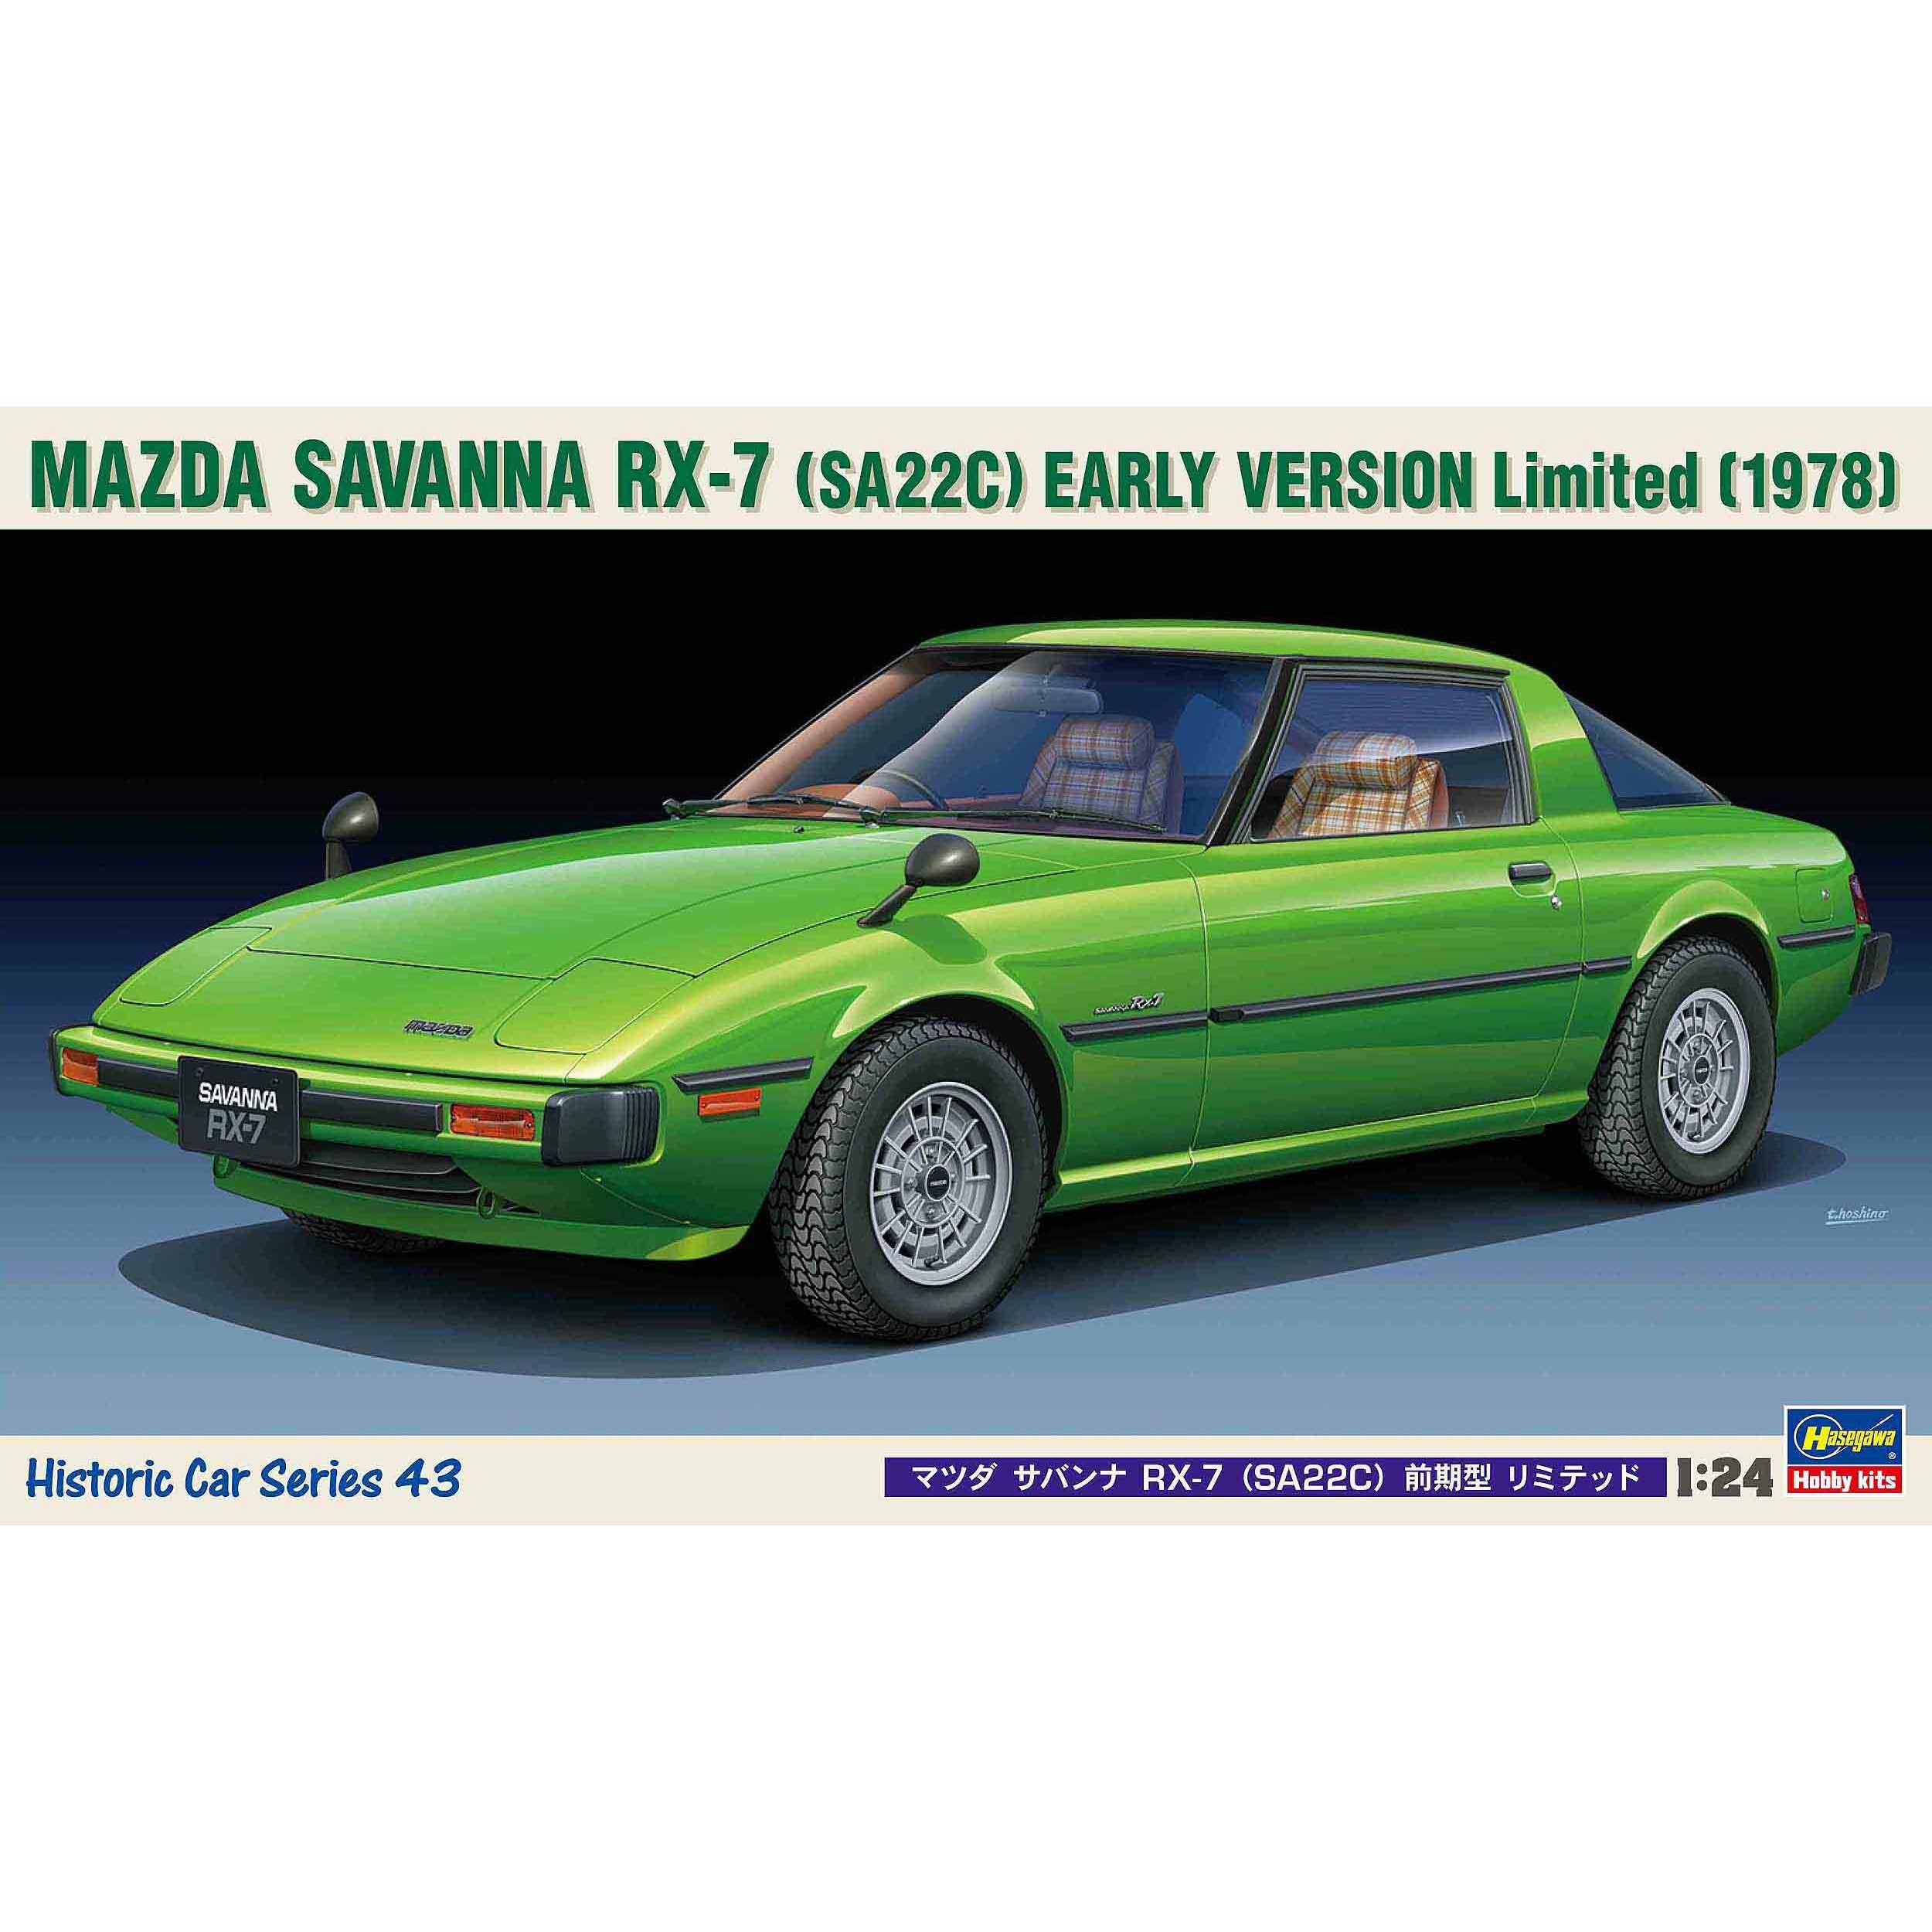 Mazda Savanna RX-7 (SA22C) Early Version Limited 1/24 #21143 by Hasegawa